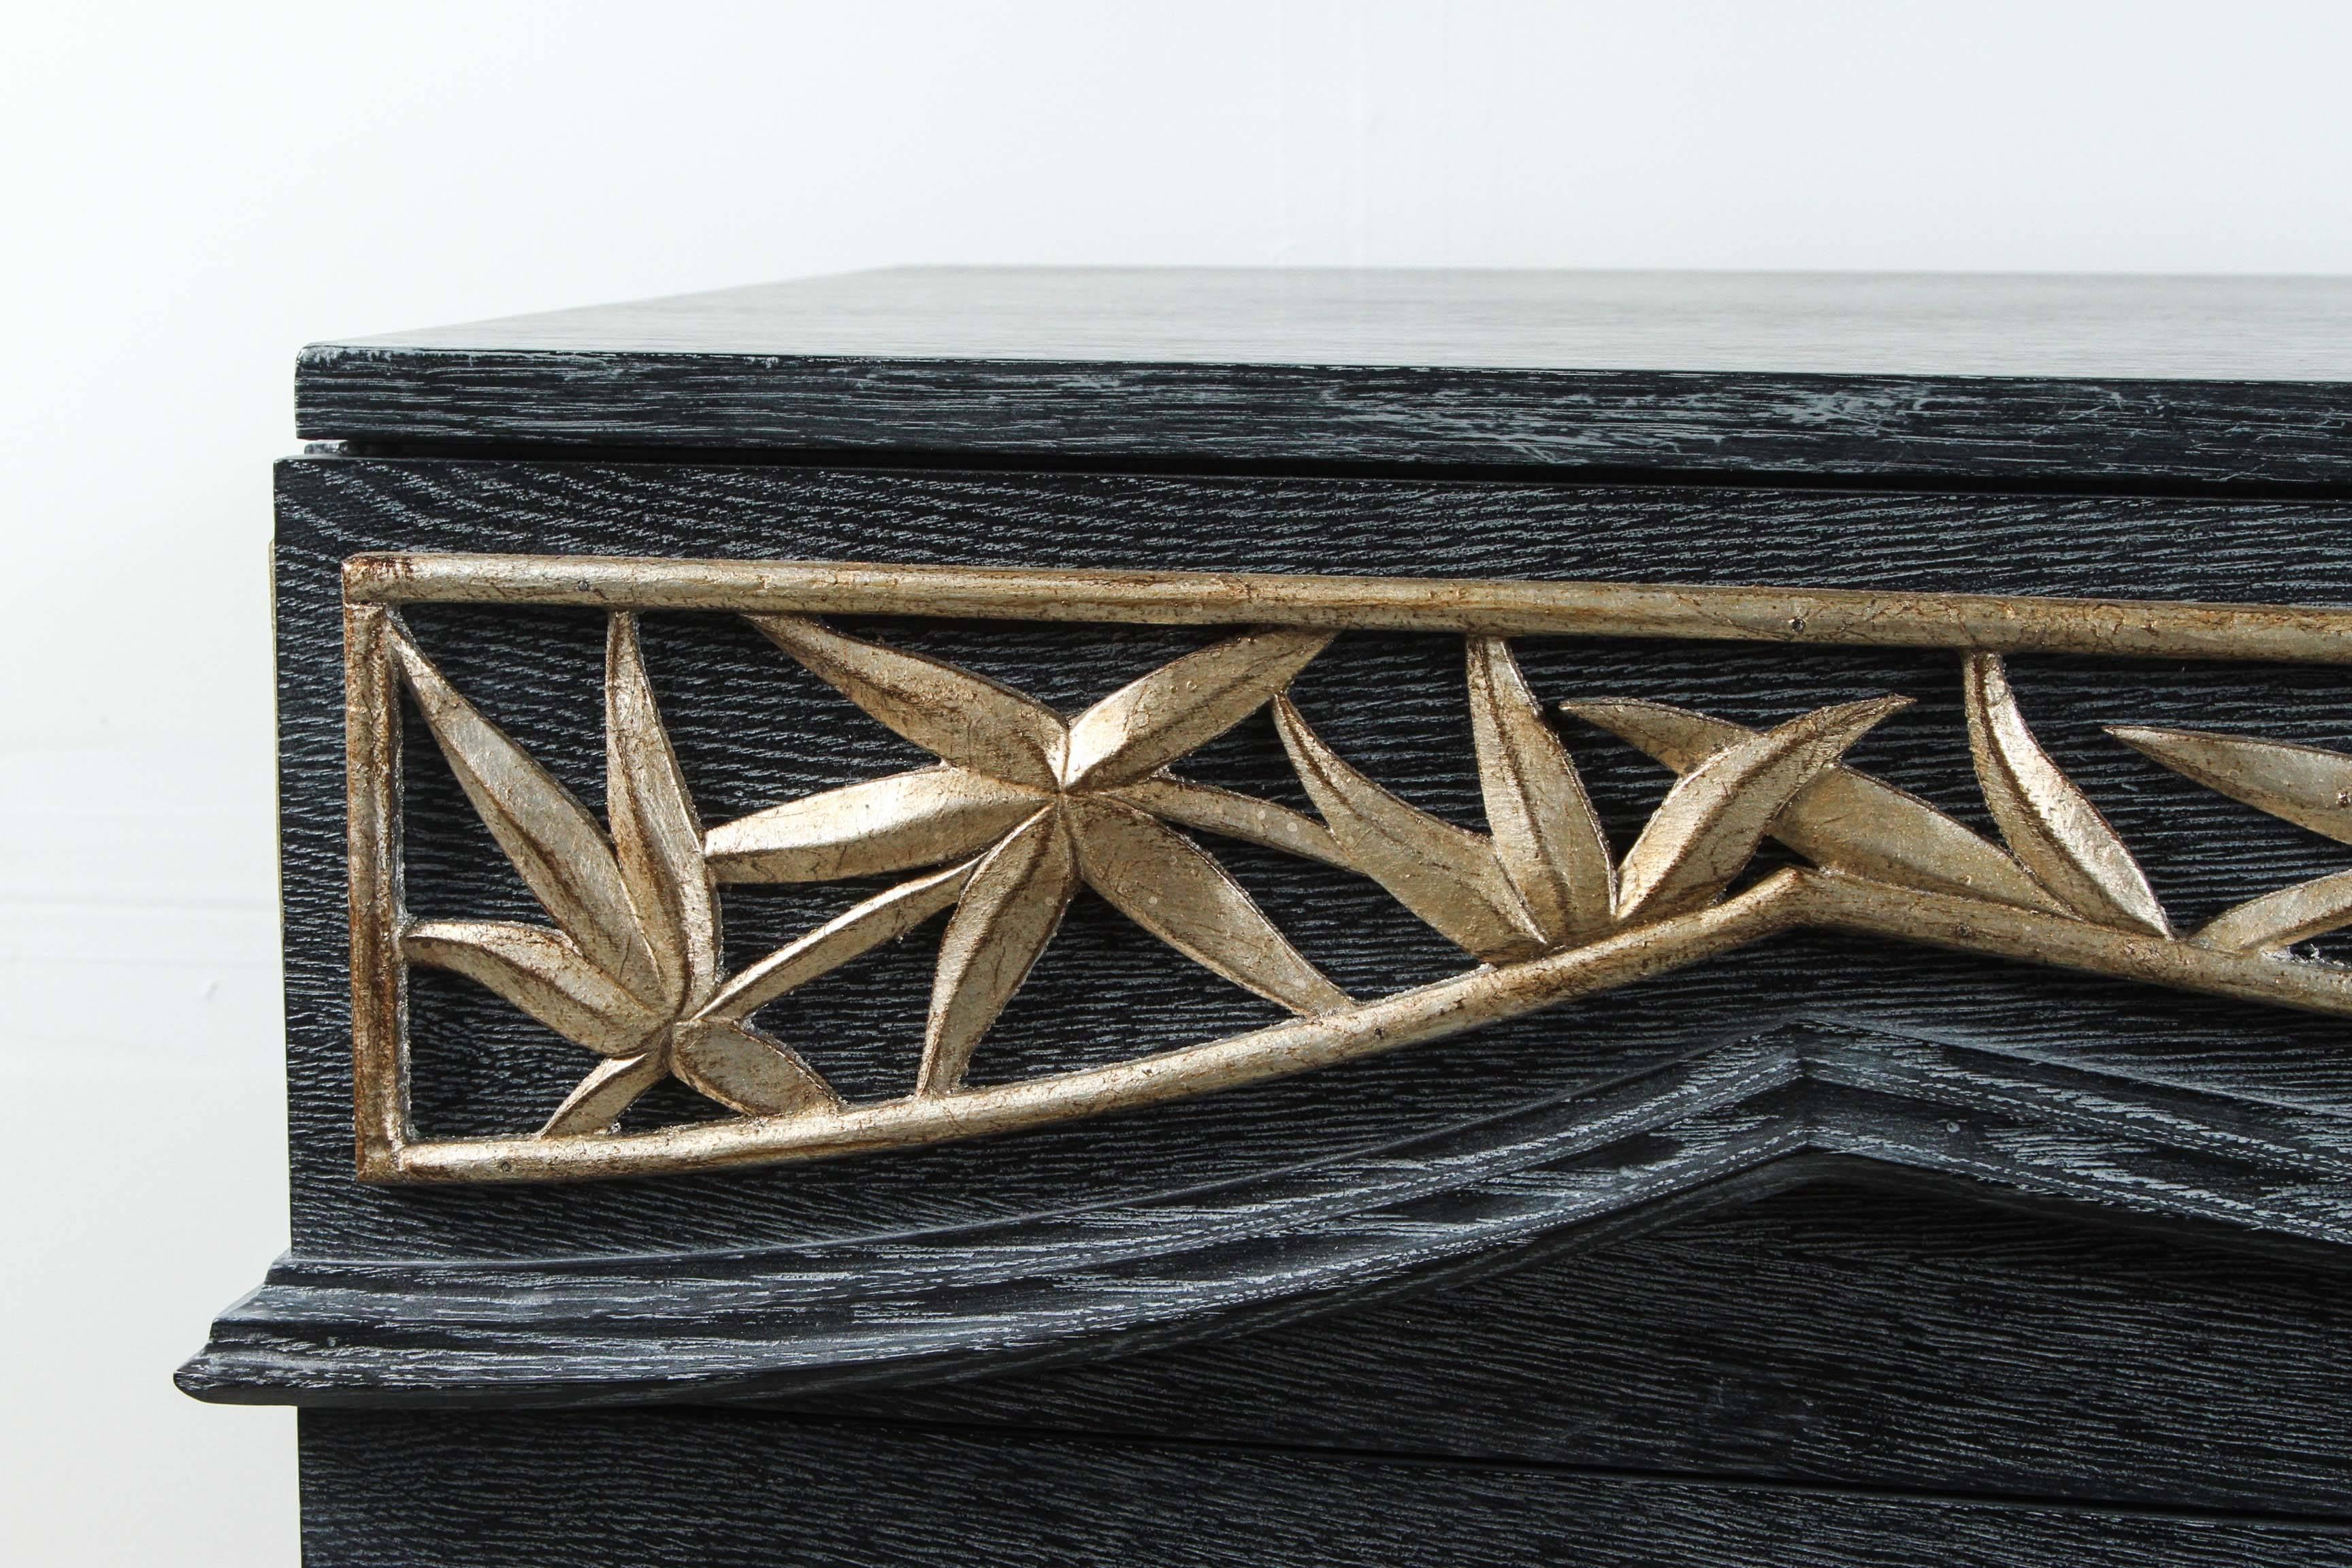 Große Kommode aus Bambus, entworfen von James Mont.
Dies ist ein schönes Beispiel für seinen ikonischen Bambus-Stil.
Das Gehäuse ist aus Eiche Cerused und wurde neu lackiert, wobei die Bambusverkleidung und die Griffe in Blattsilber lasiert wurden.